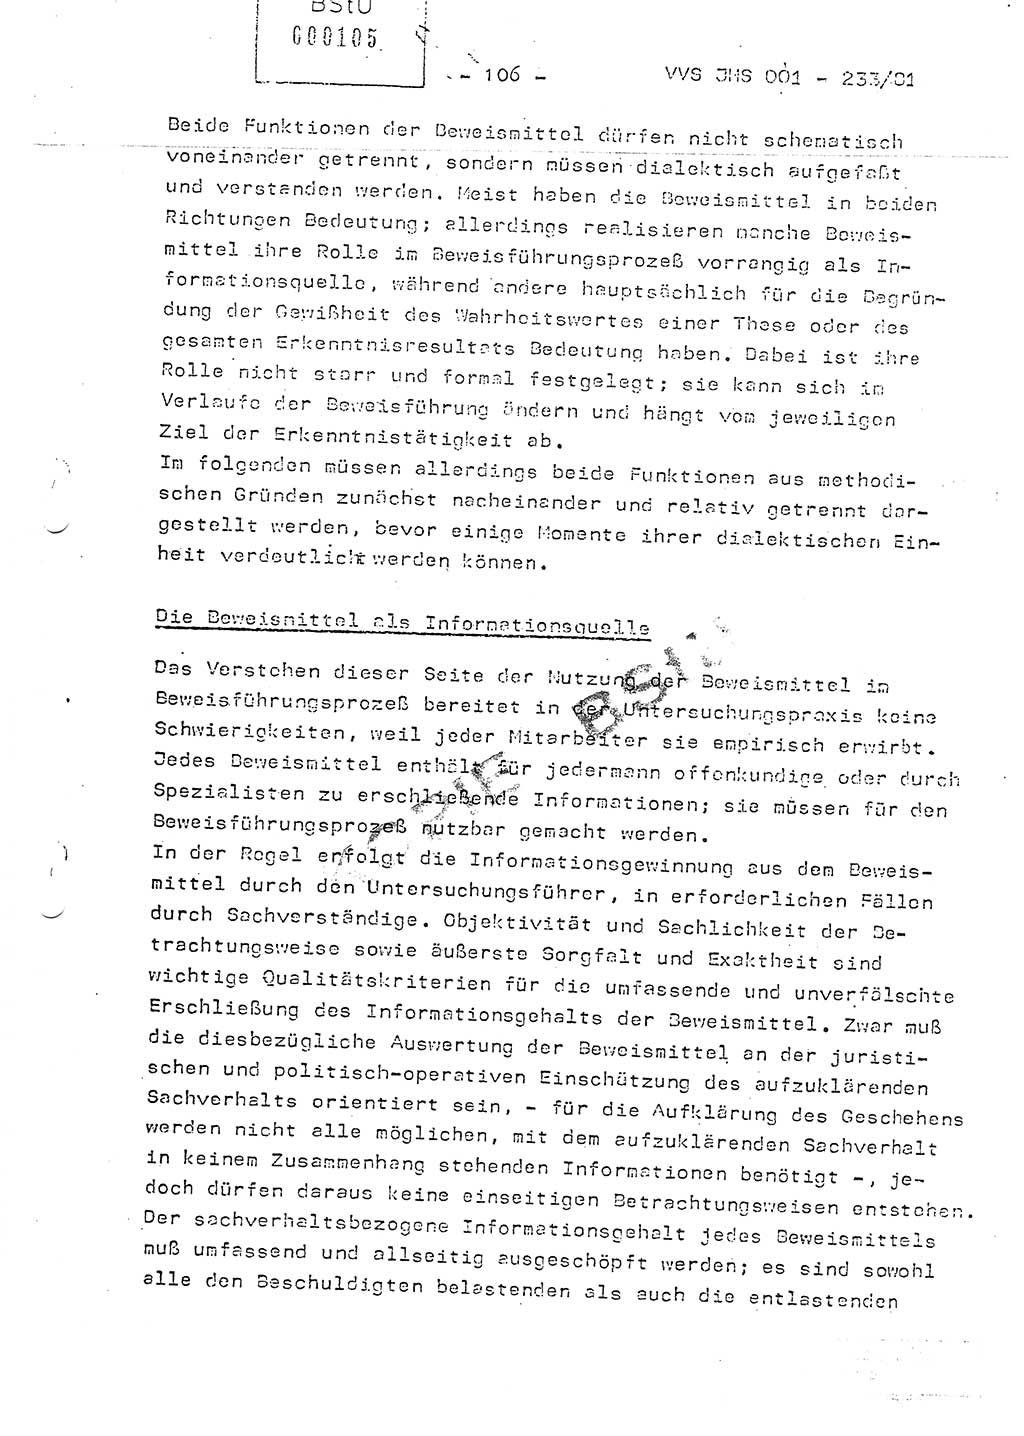 Dissertation Oberstleutnant Horst Zank (JHS), Oberstleutnant Dr. Karl-Heinz Knoblauch (JHS), Oberstleutnant Gustav-Adolf Kowalewski (HA Ⅸ), Oberstleutnant Wolfgang Plötner (HA Ⅸ), Ministerium für Staatssicherheit (MfS) [Deutsche Demokratische Republik (DDR)], Juristische Hochschule (JHS), Vertrauliche Verschlußsache (VVS) o001-233/81, Potsdam 1981, Blatt 106 (Diss. MfS DDR JHS VVS o001-233/81 1981, Bl. 106)